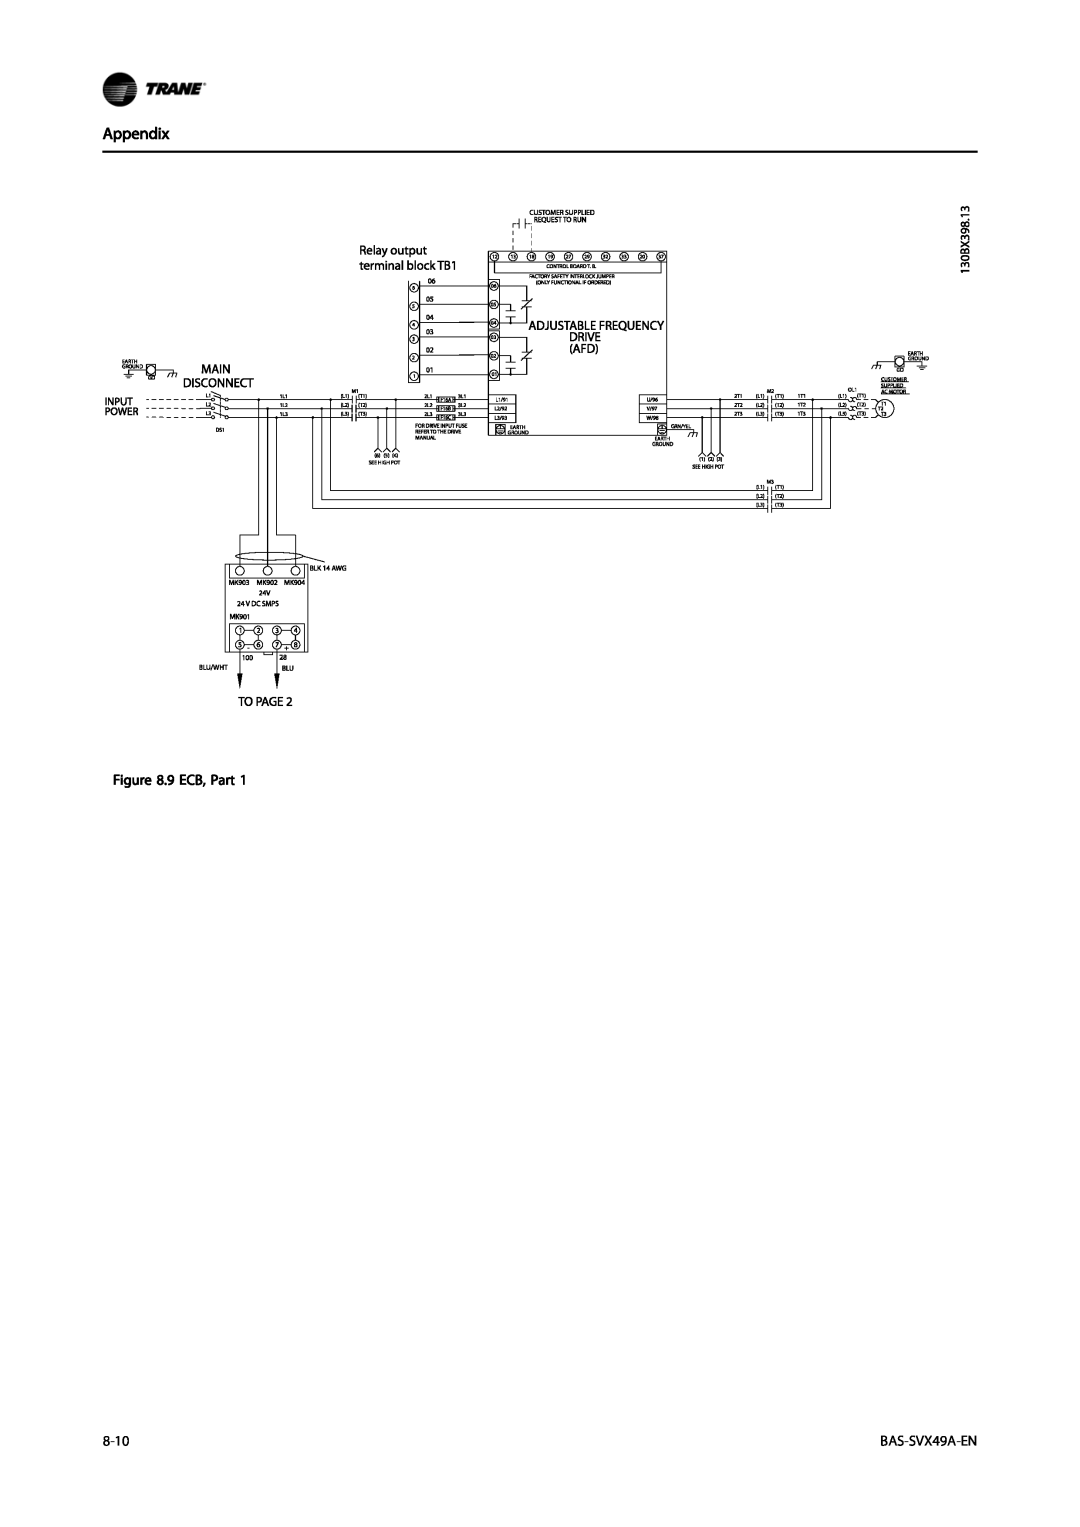 Trane TR200, Vertical Bypass/Non Bypass Panel specifications Appendix, 9 ECB, Part, 8-10, BAS-SVX49A-EN 